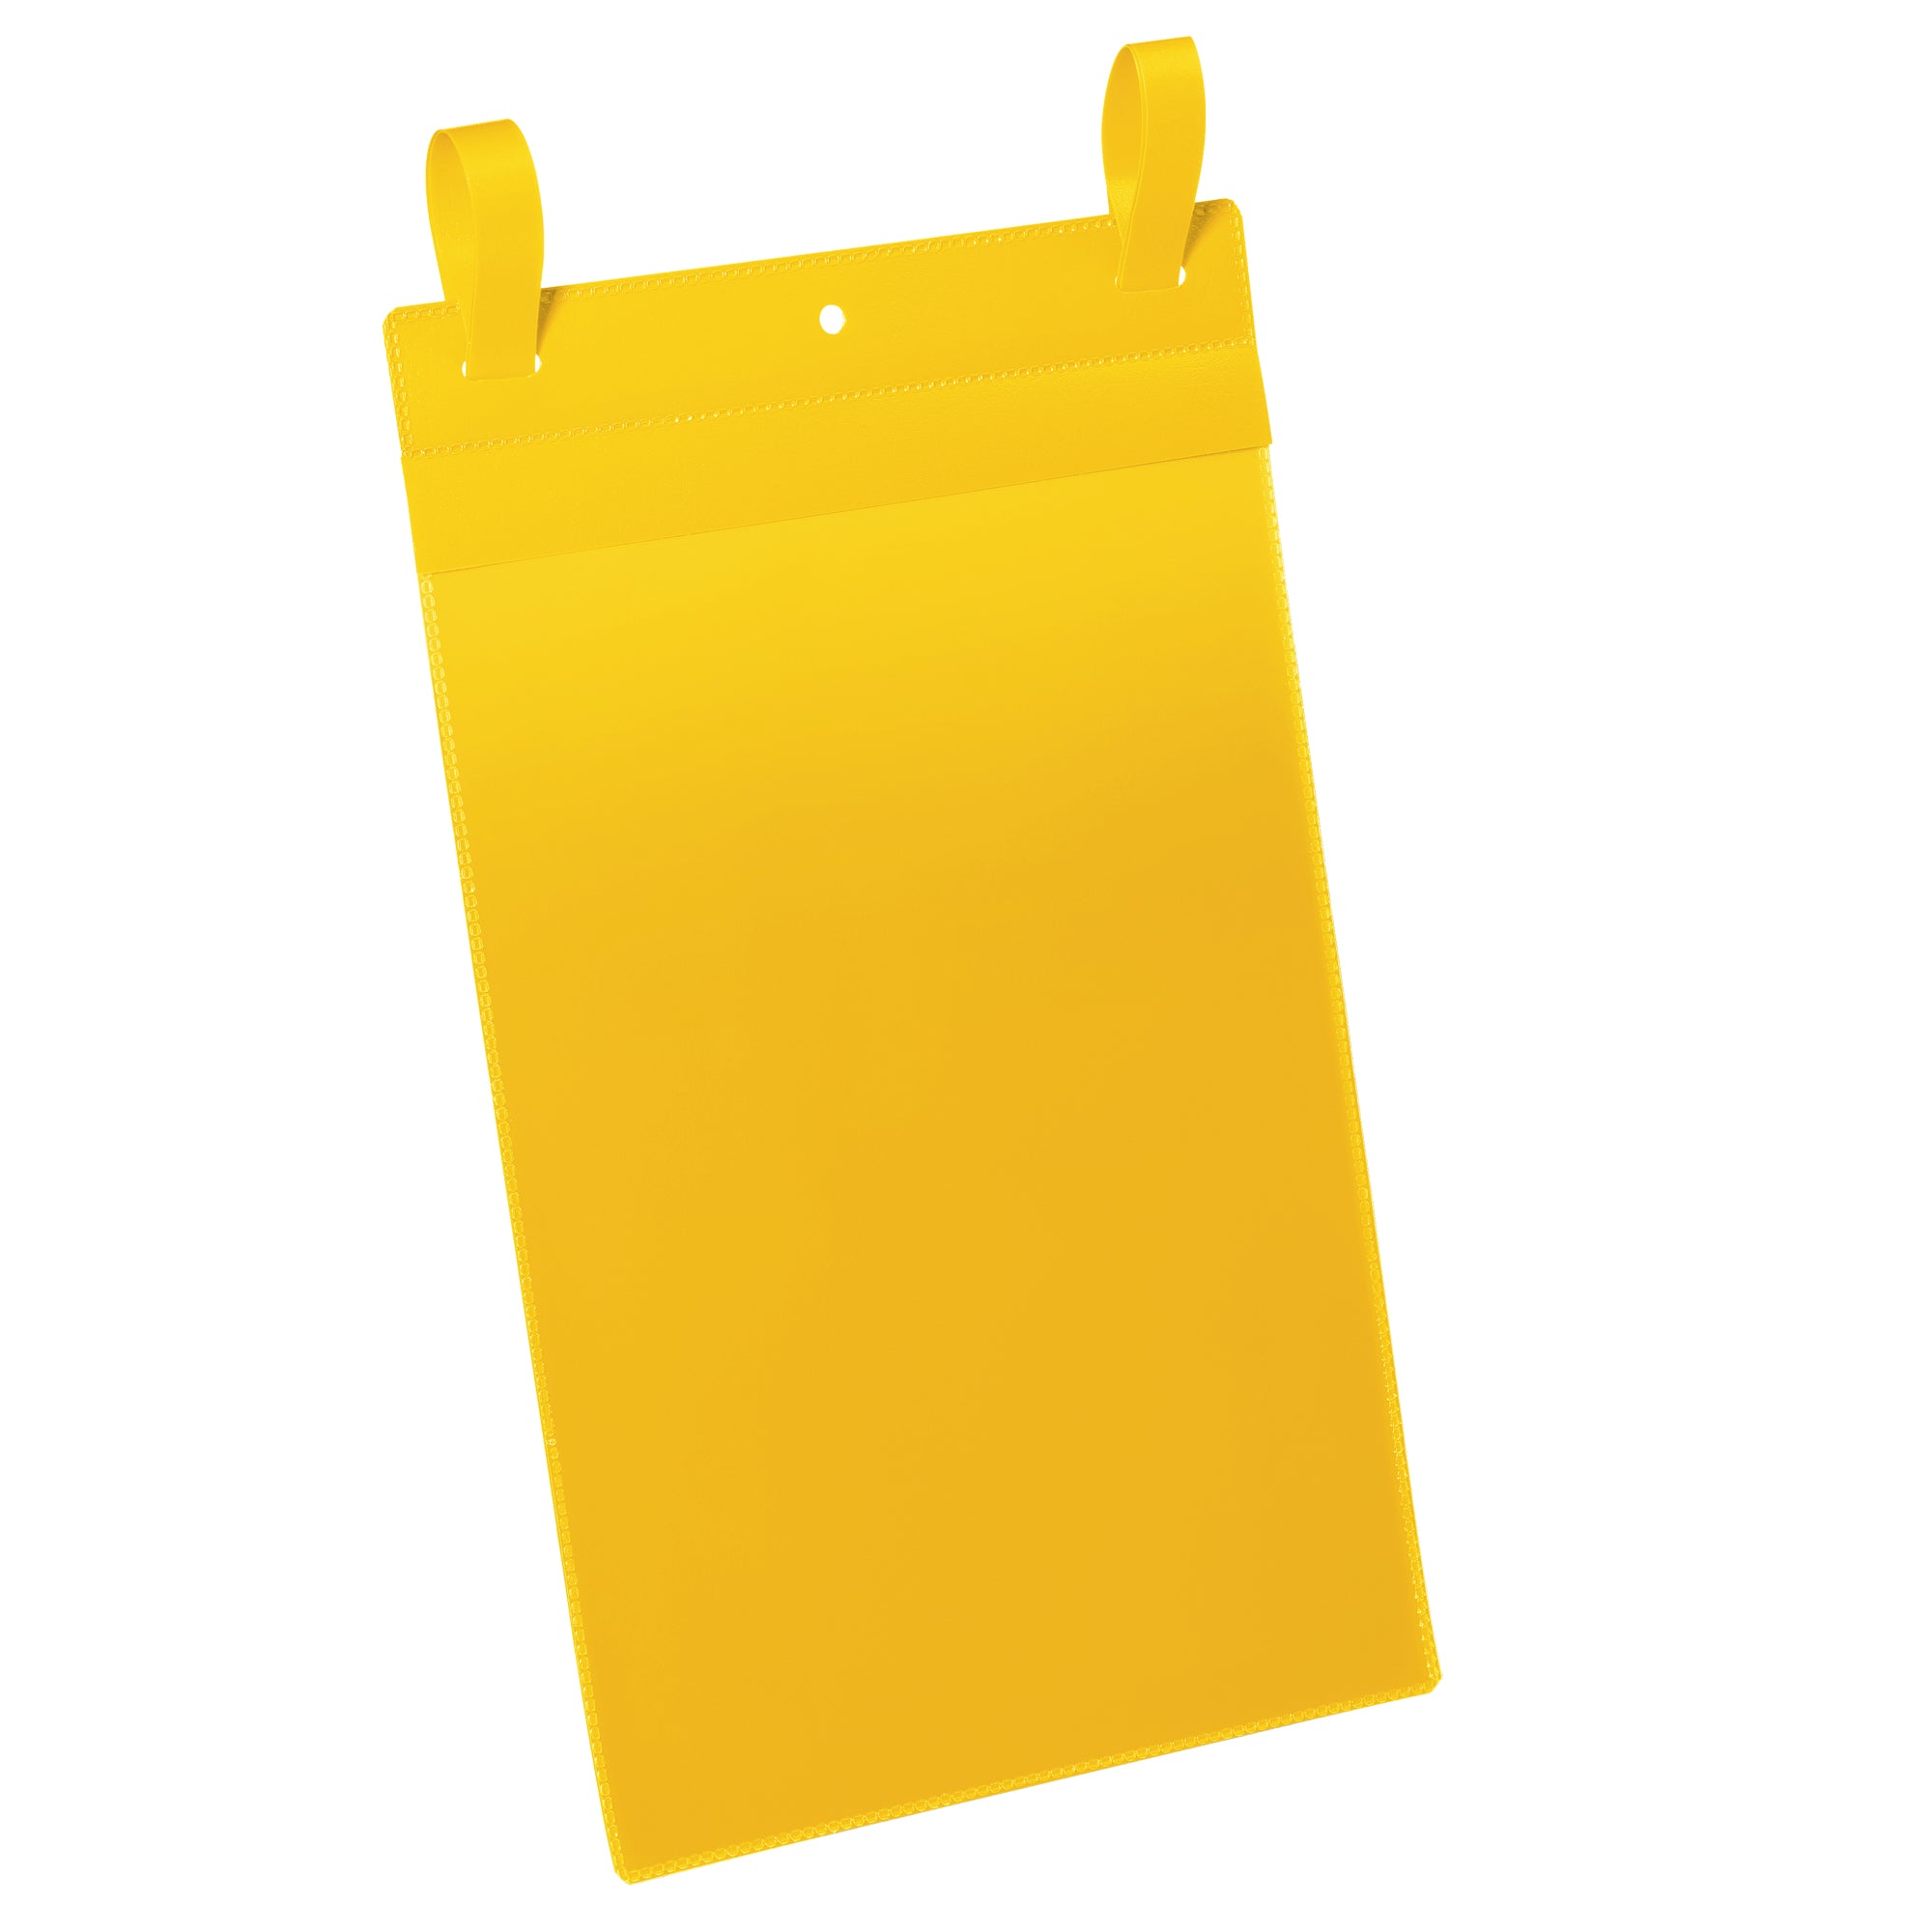 durable-50-buste-identificazione-fascette-210x297mma4-vert-art1750-giallo